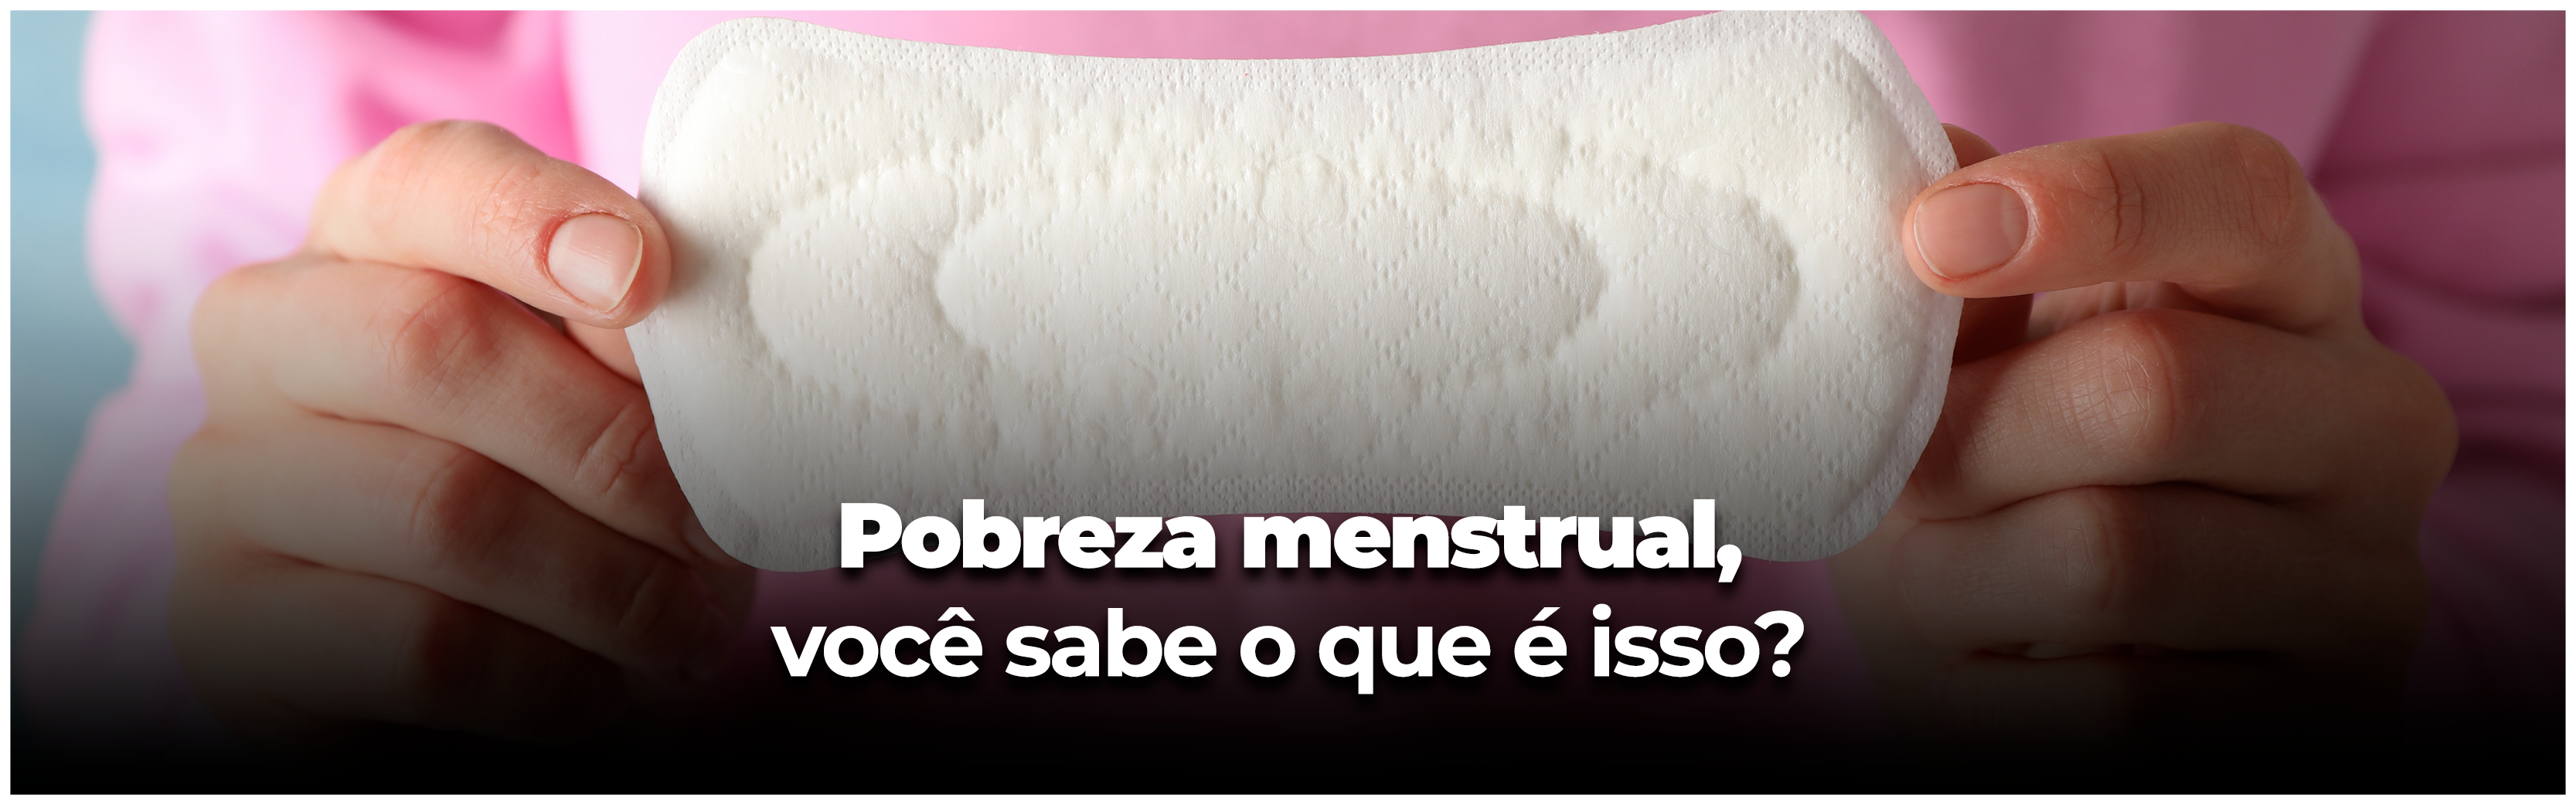 Menstruação: saiba tudo sobre o assunto